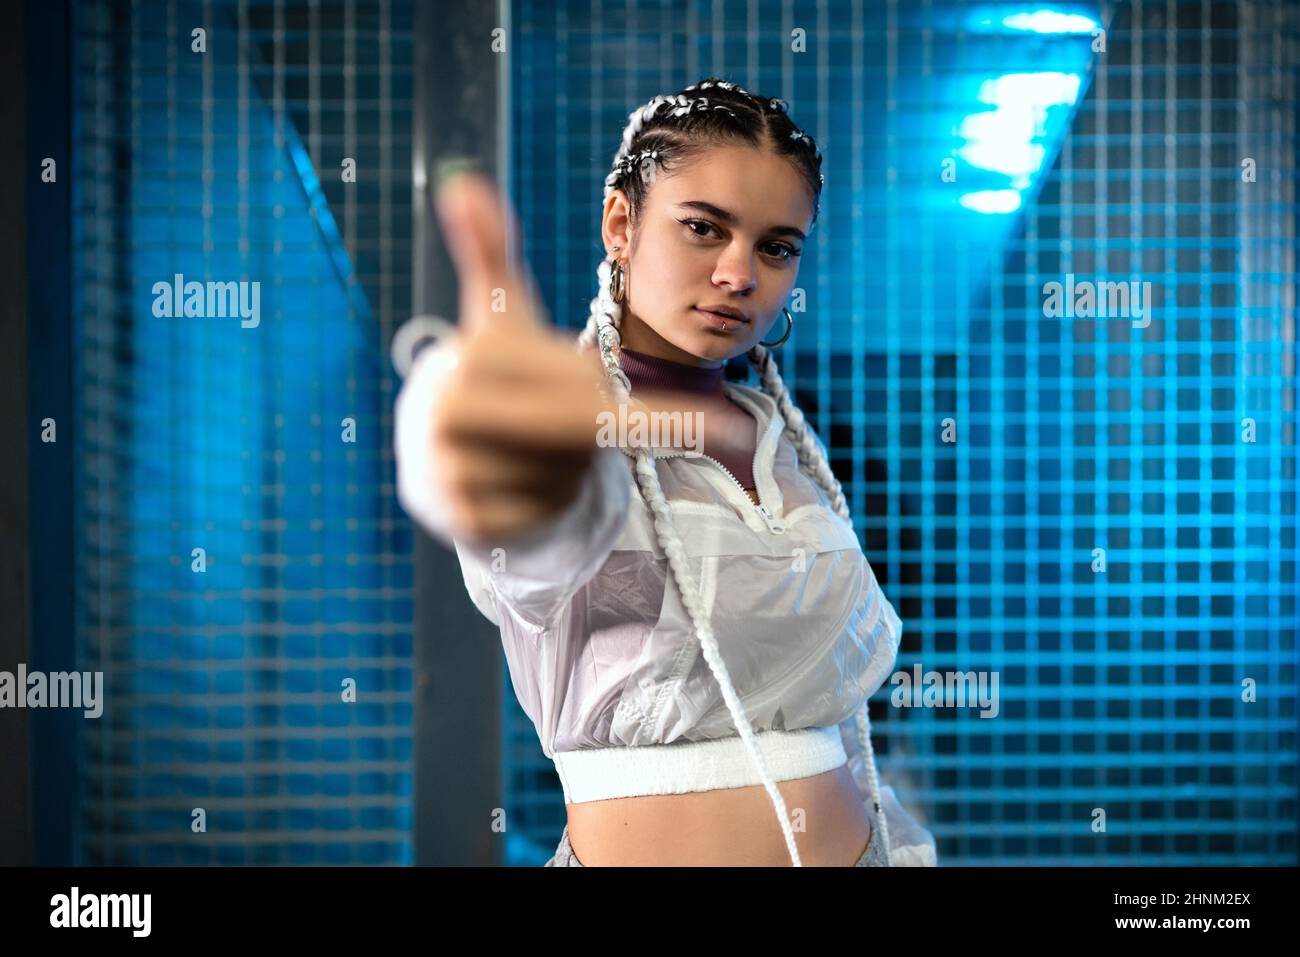 Junge Frau zeigt Mittelfinger seitlich zur Kamera mit blauem Licht im  Hintergrund Stockfotografie - Alamy